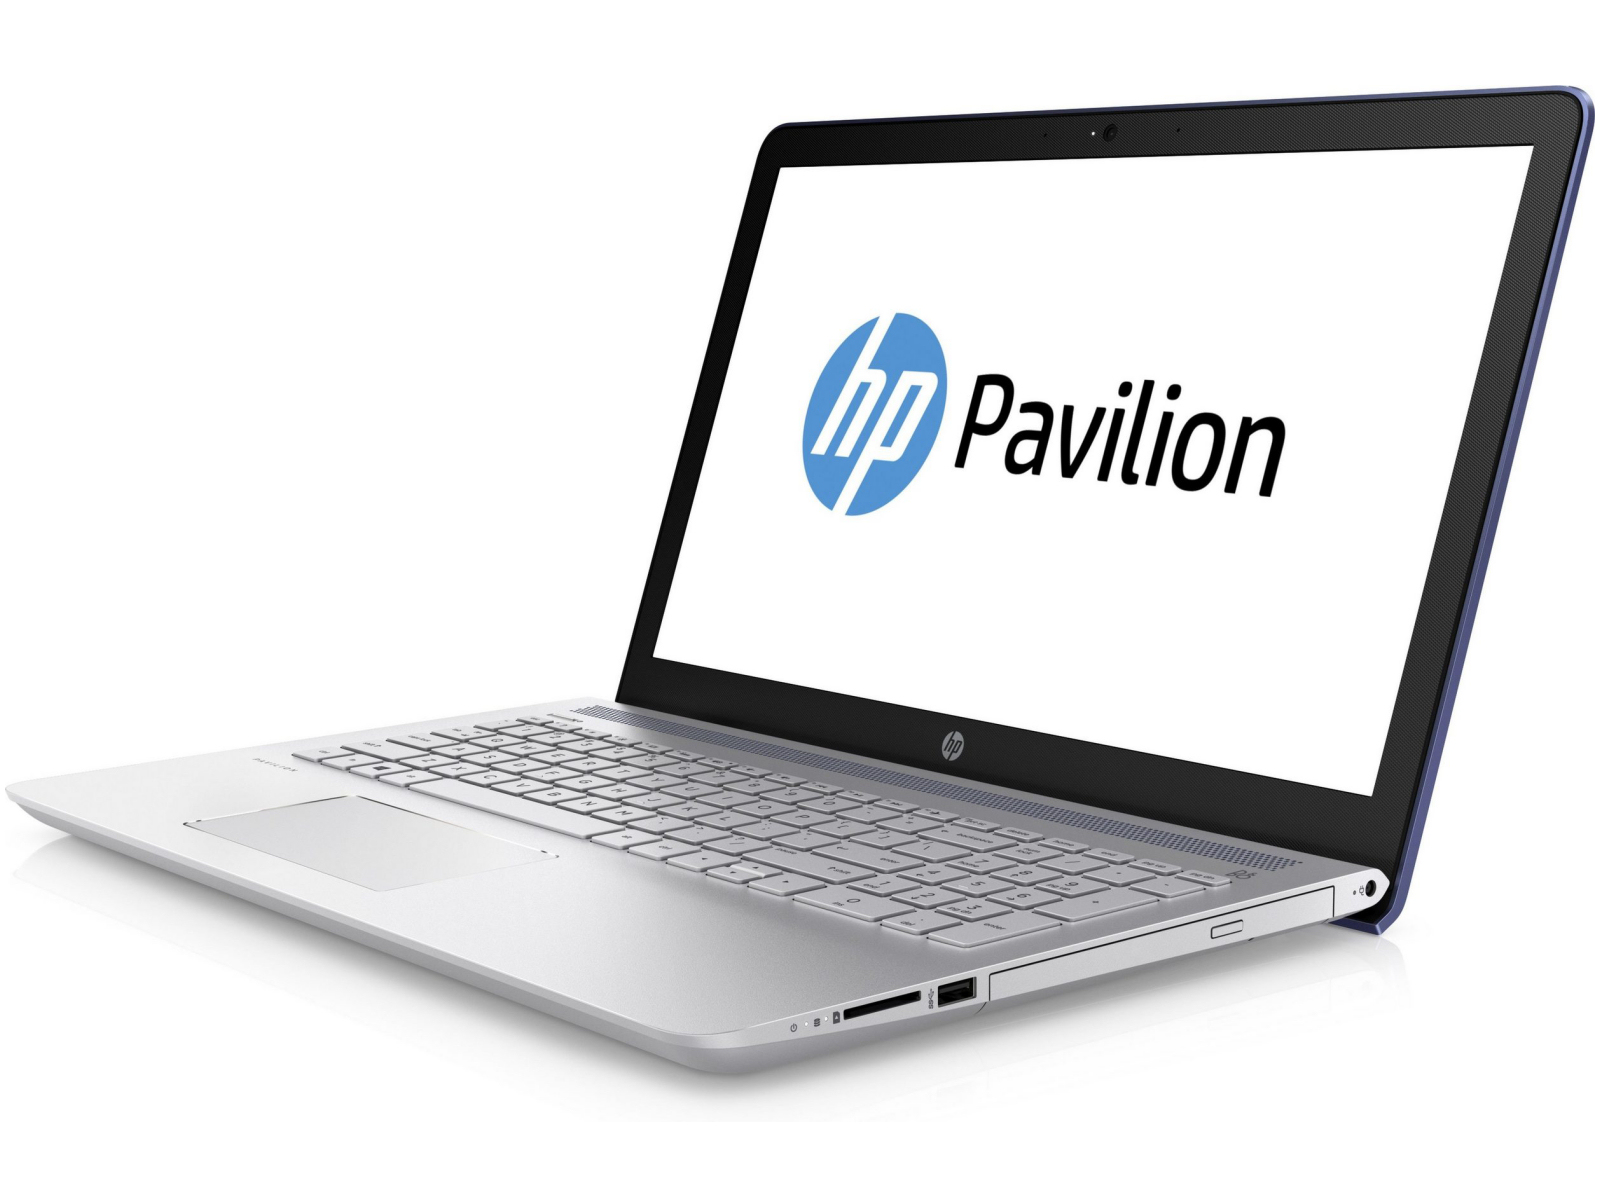 HP Pavilion 15t (i5-8250U, 940MX, FHD) Laptop Review 